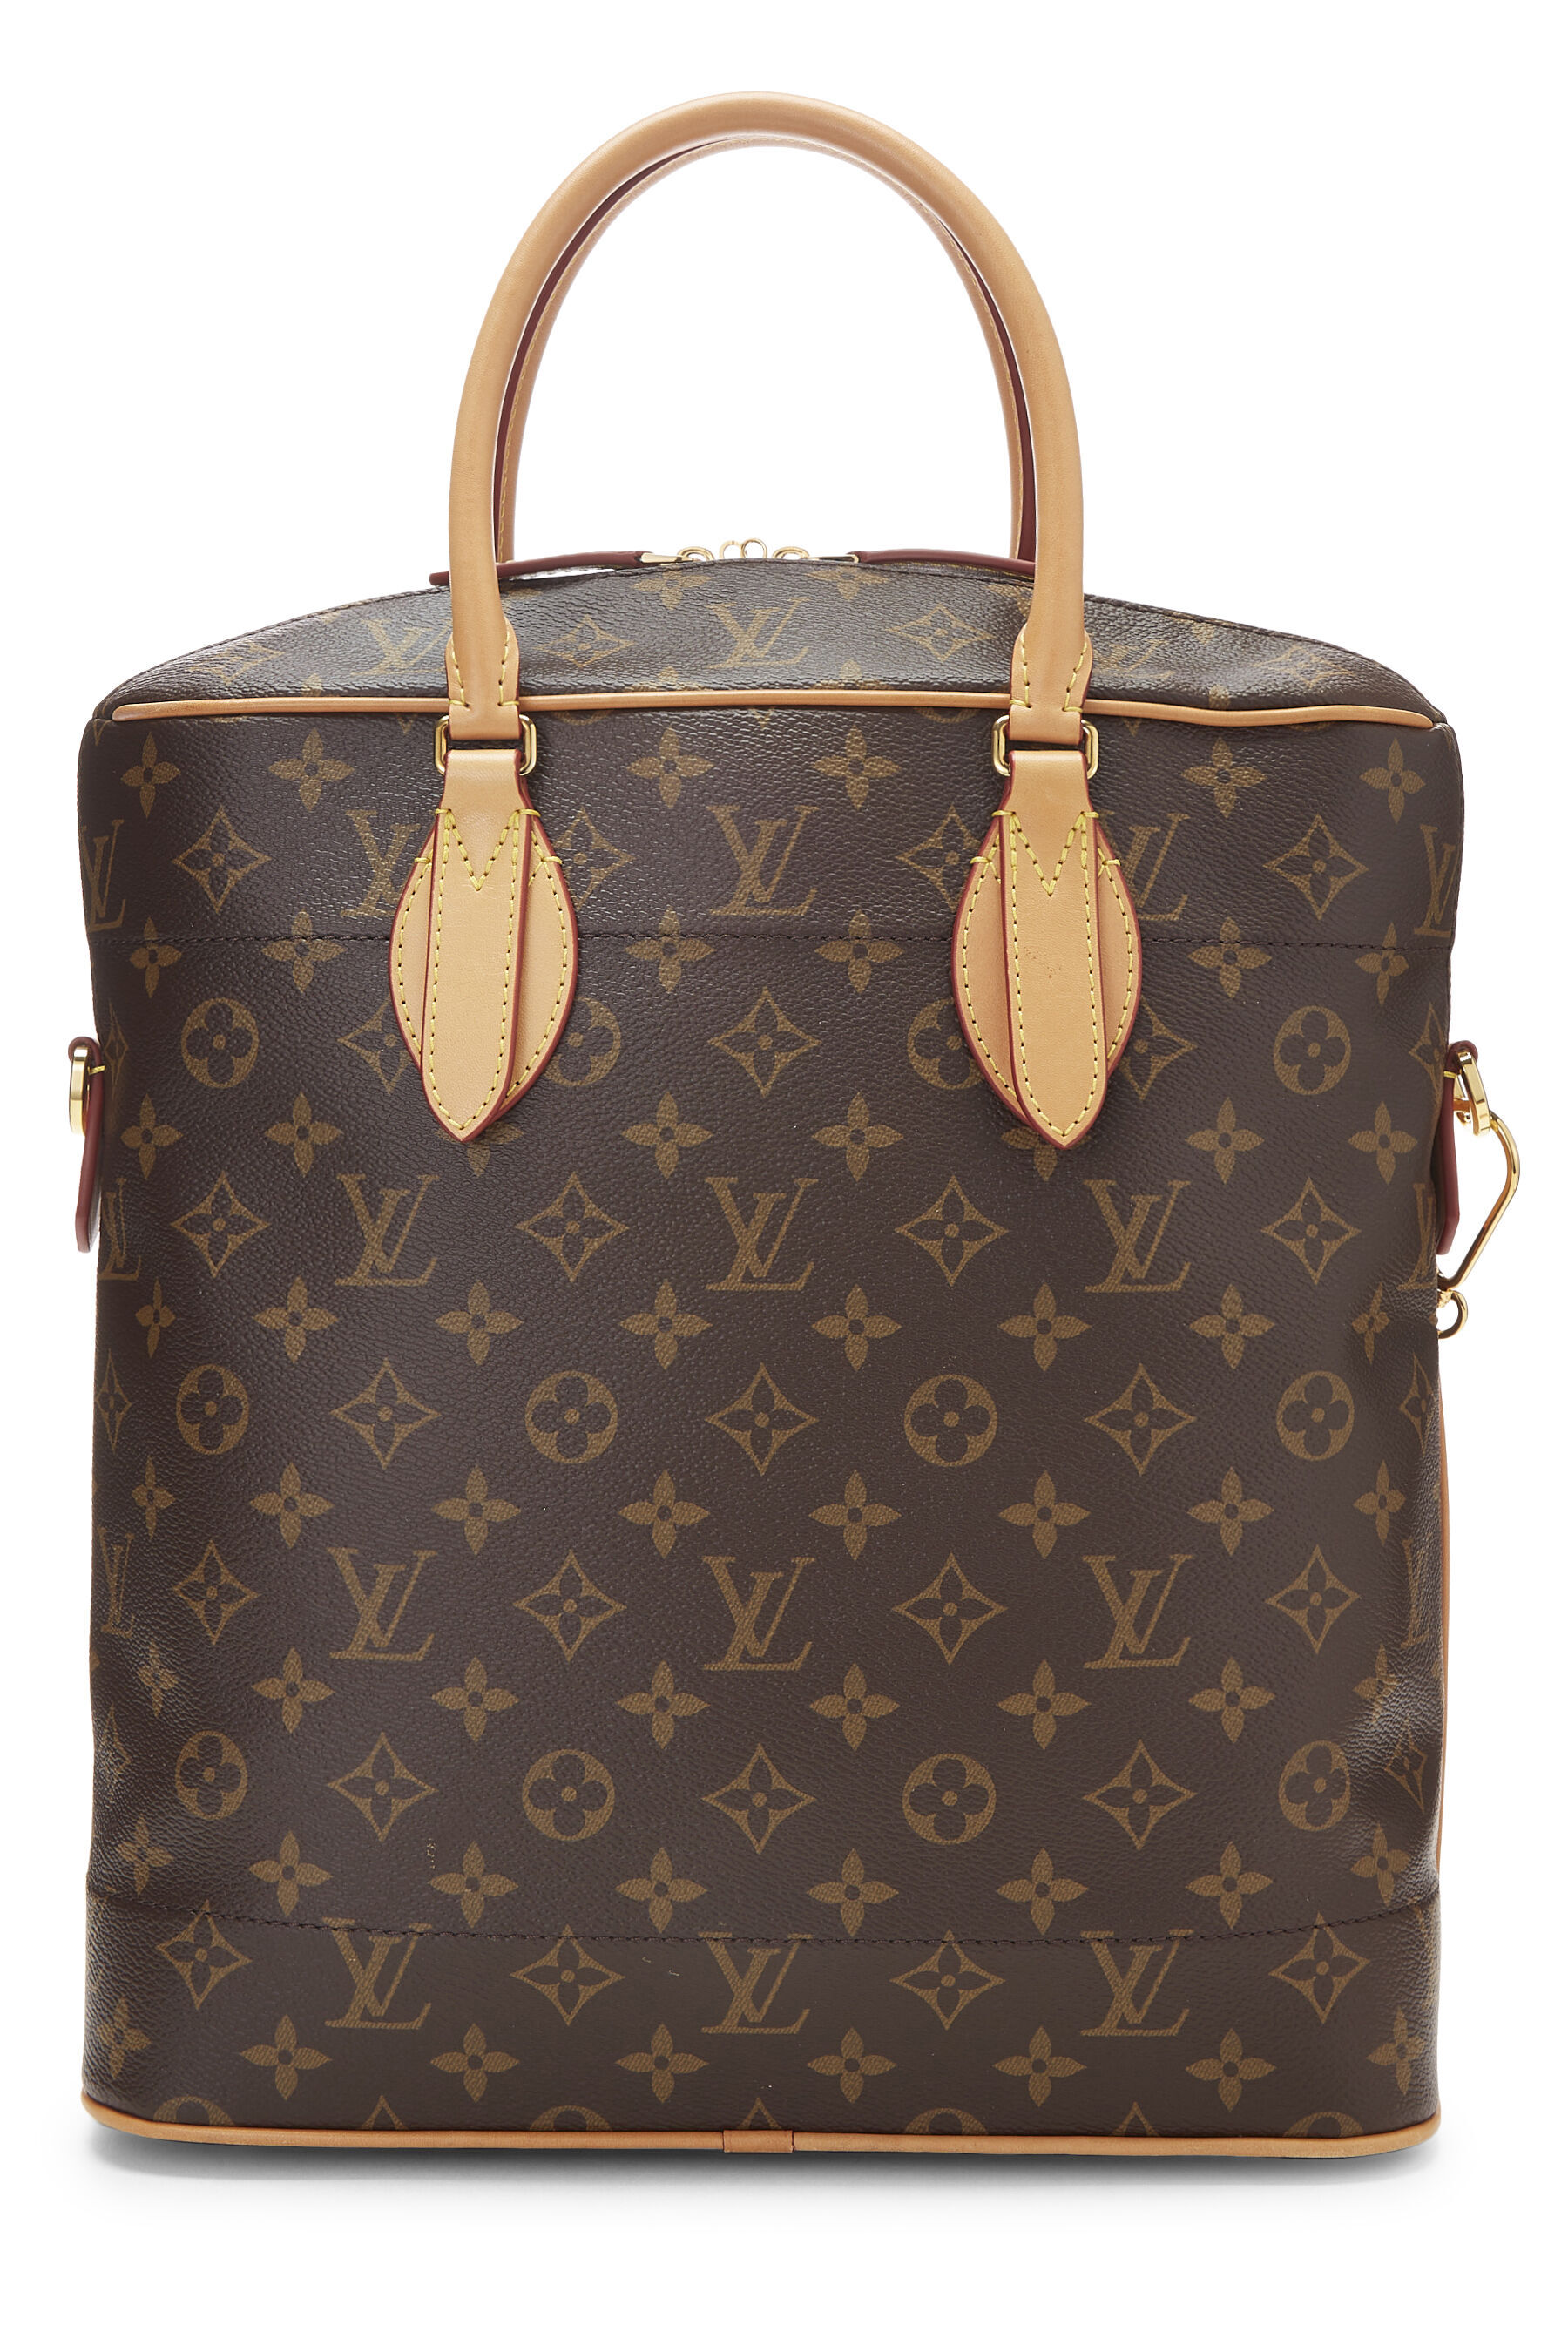 Louis Vuitton AllIn MM Bag Monogram  THE PURSE AFFAIR